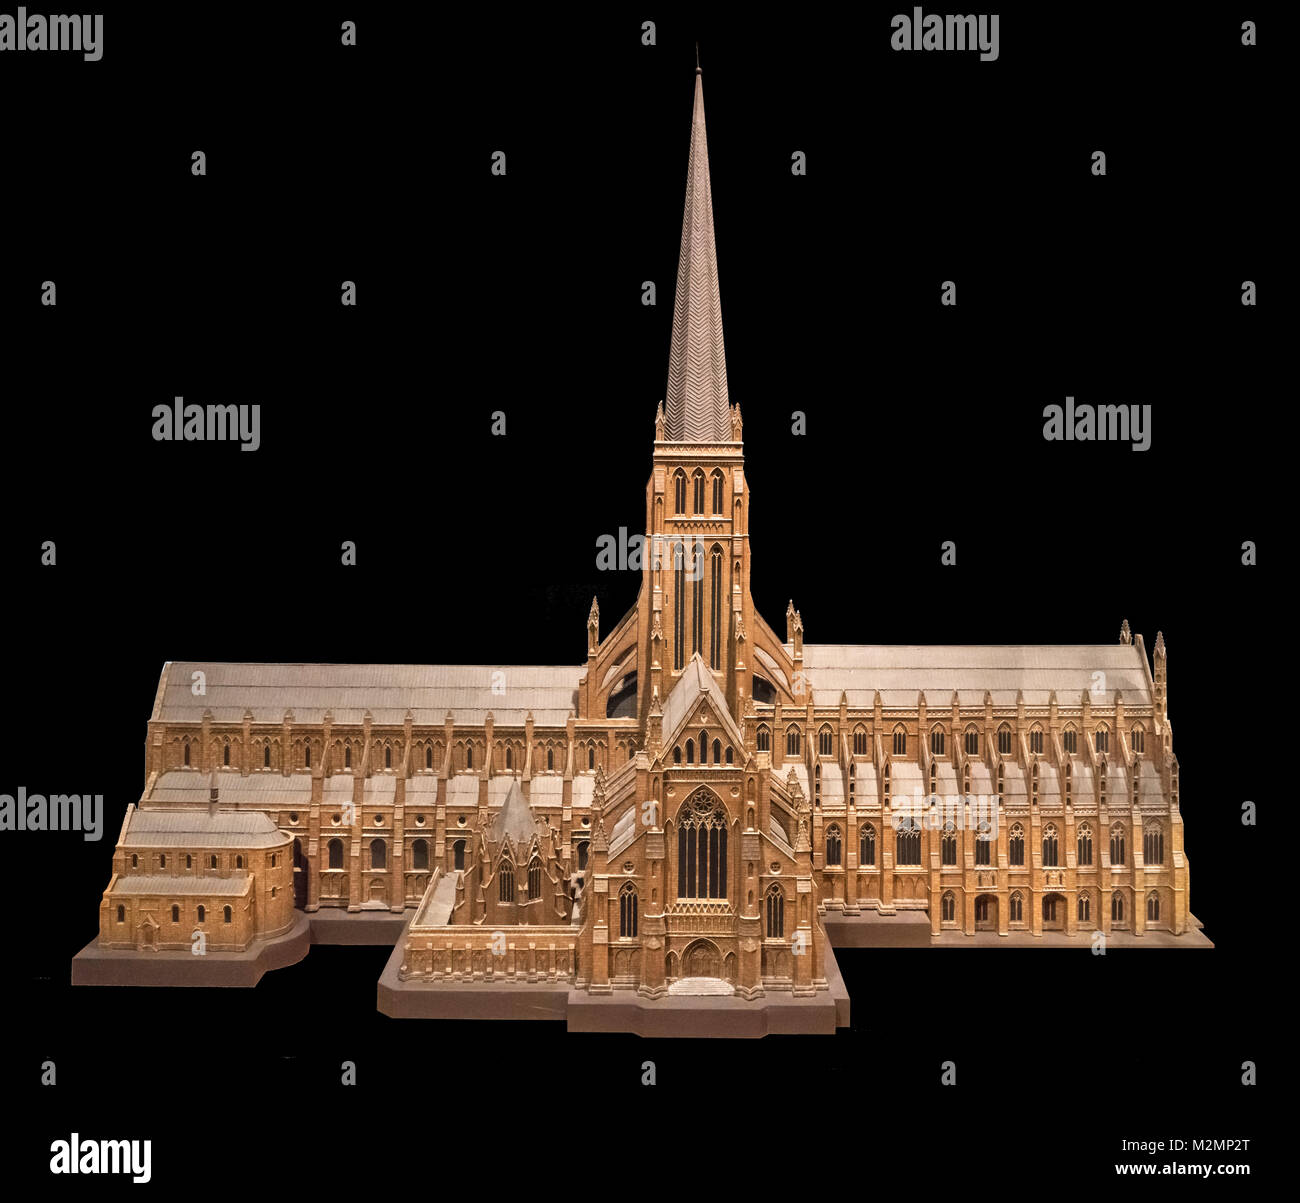 Modell der alten St Paul's Cathedral, London, die in 1320 abgeschlossen wurde und in dem großen Brand von London zerstört im Jahre 1666 (der Turm wurde im Jahr 1561 durch einen Blitzeinschlag zerstört), Museum of London, London, England, Großbritannien Stockfoto